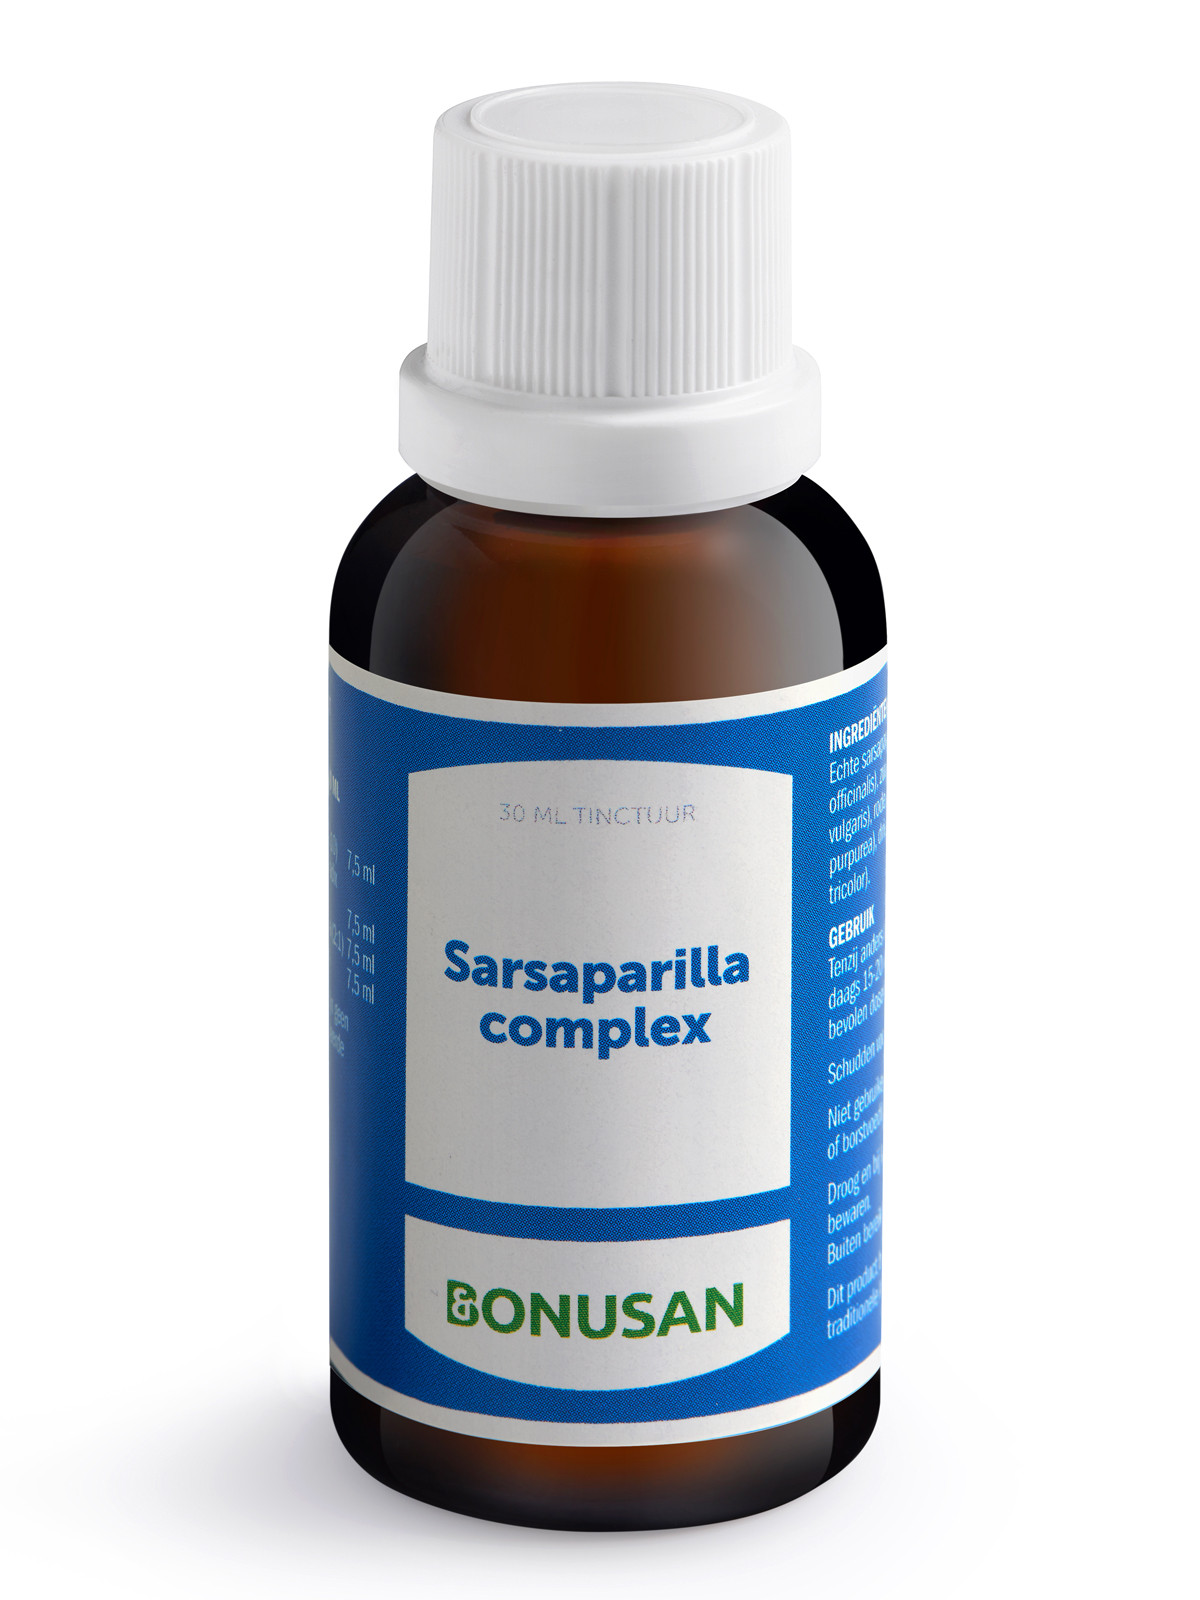 Sarsaparilla complex